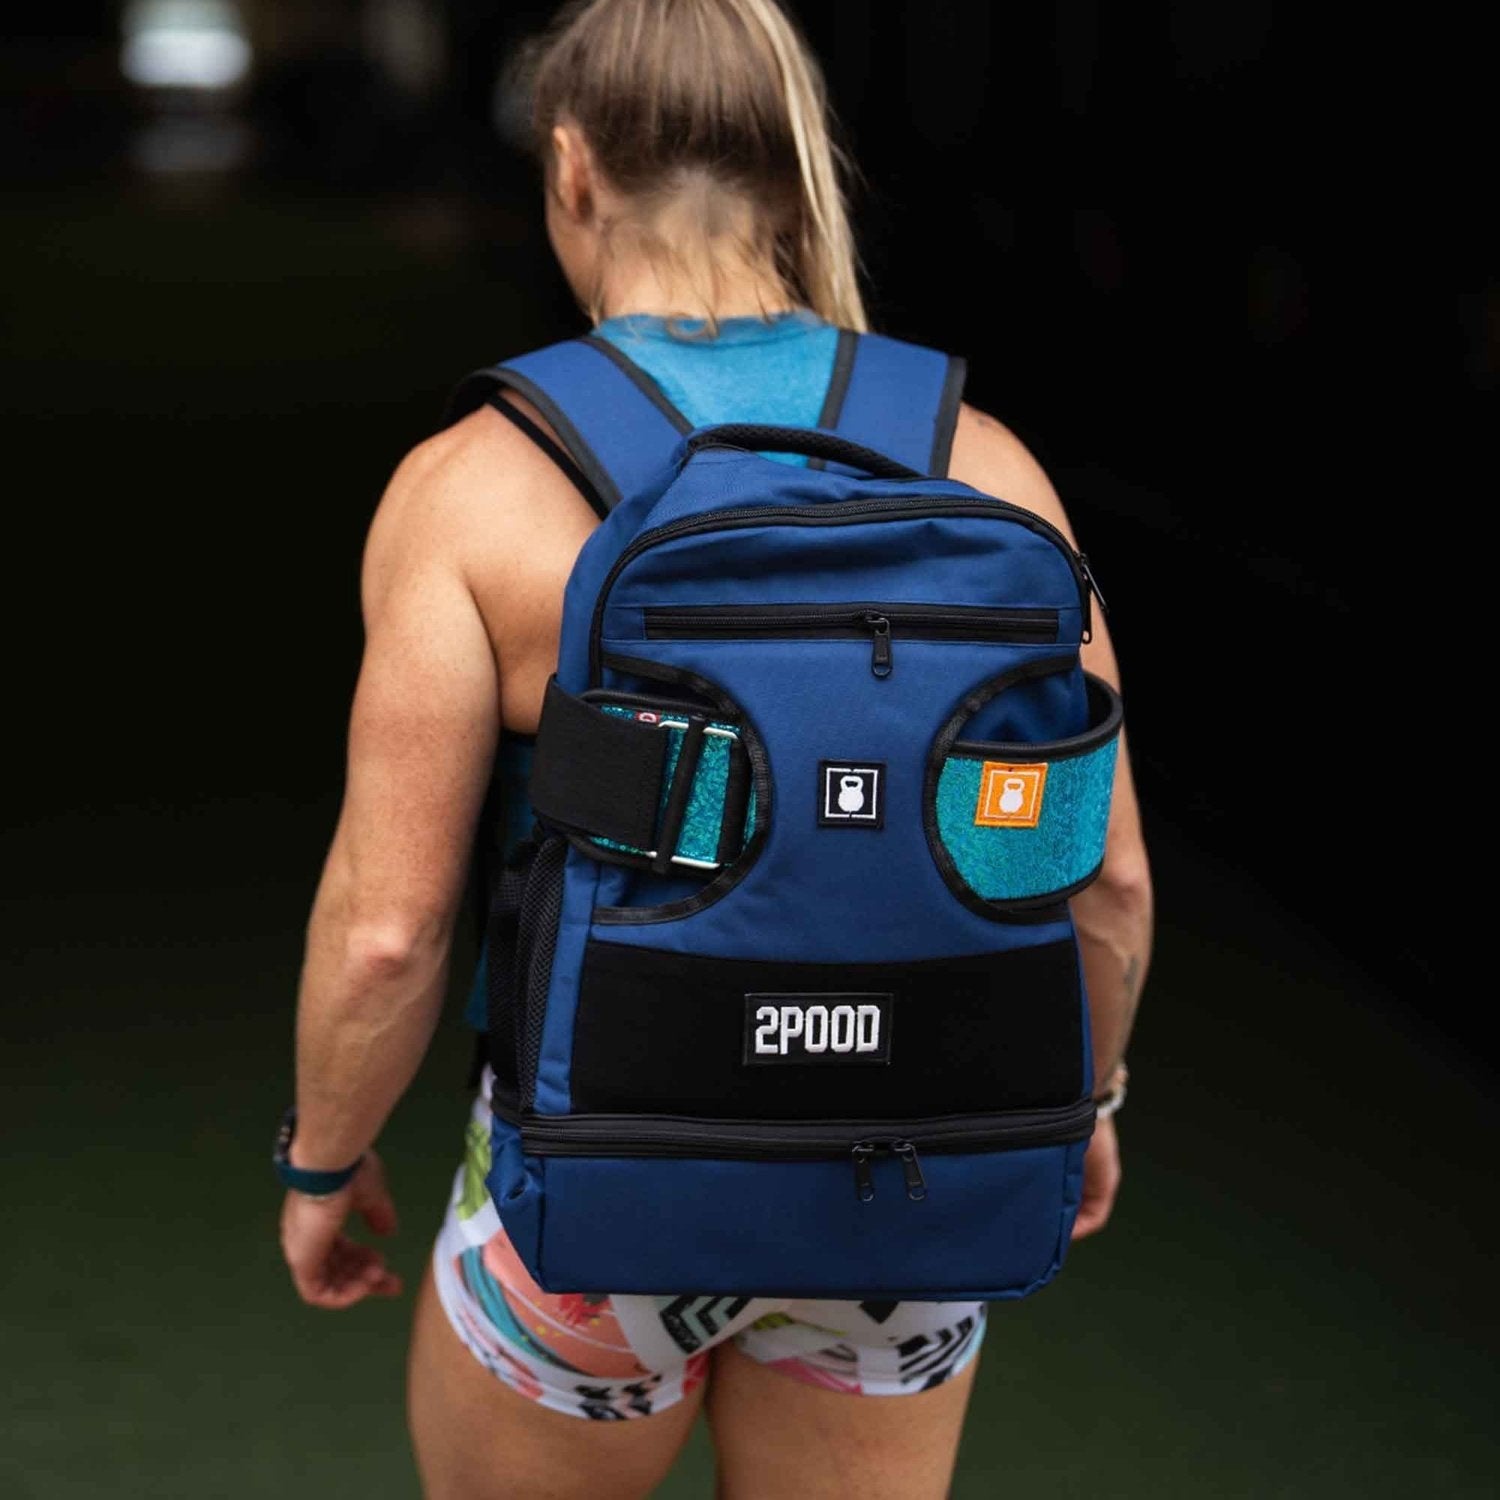 2POOD 2POOD Performance Backpack (Regular) mit Gürtelfach (Auslaufmodell) Blau kaufen bei HighPowered.ch